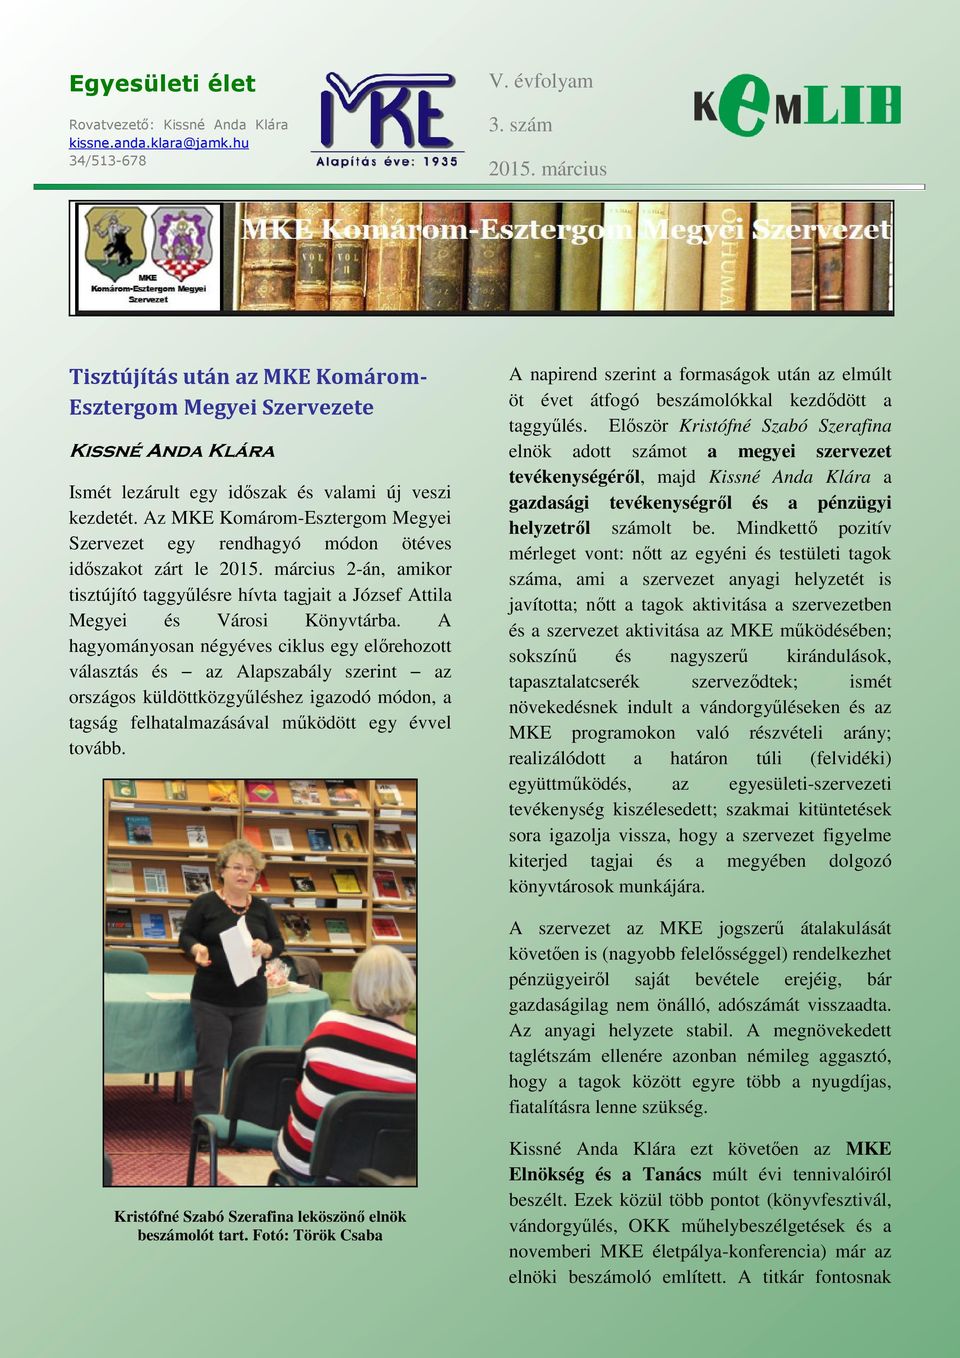 Az MKE Komárom-Esztergom Megyei Szervezet egy rendhagyó módon ötéves időszakot zárt le 2015. március 2-án, amikor tisztújító taggyűlésre hívta tagjait a József Attila Megyei és Városi Könyvtárba.